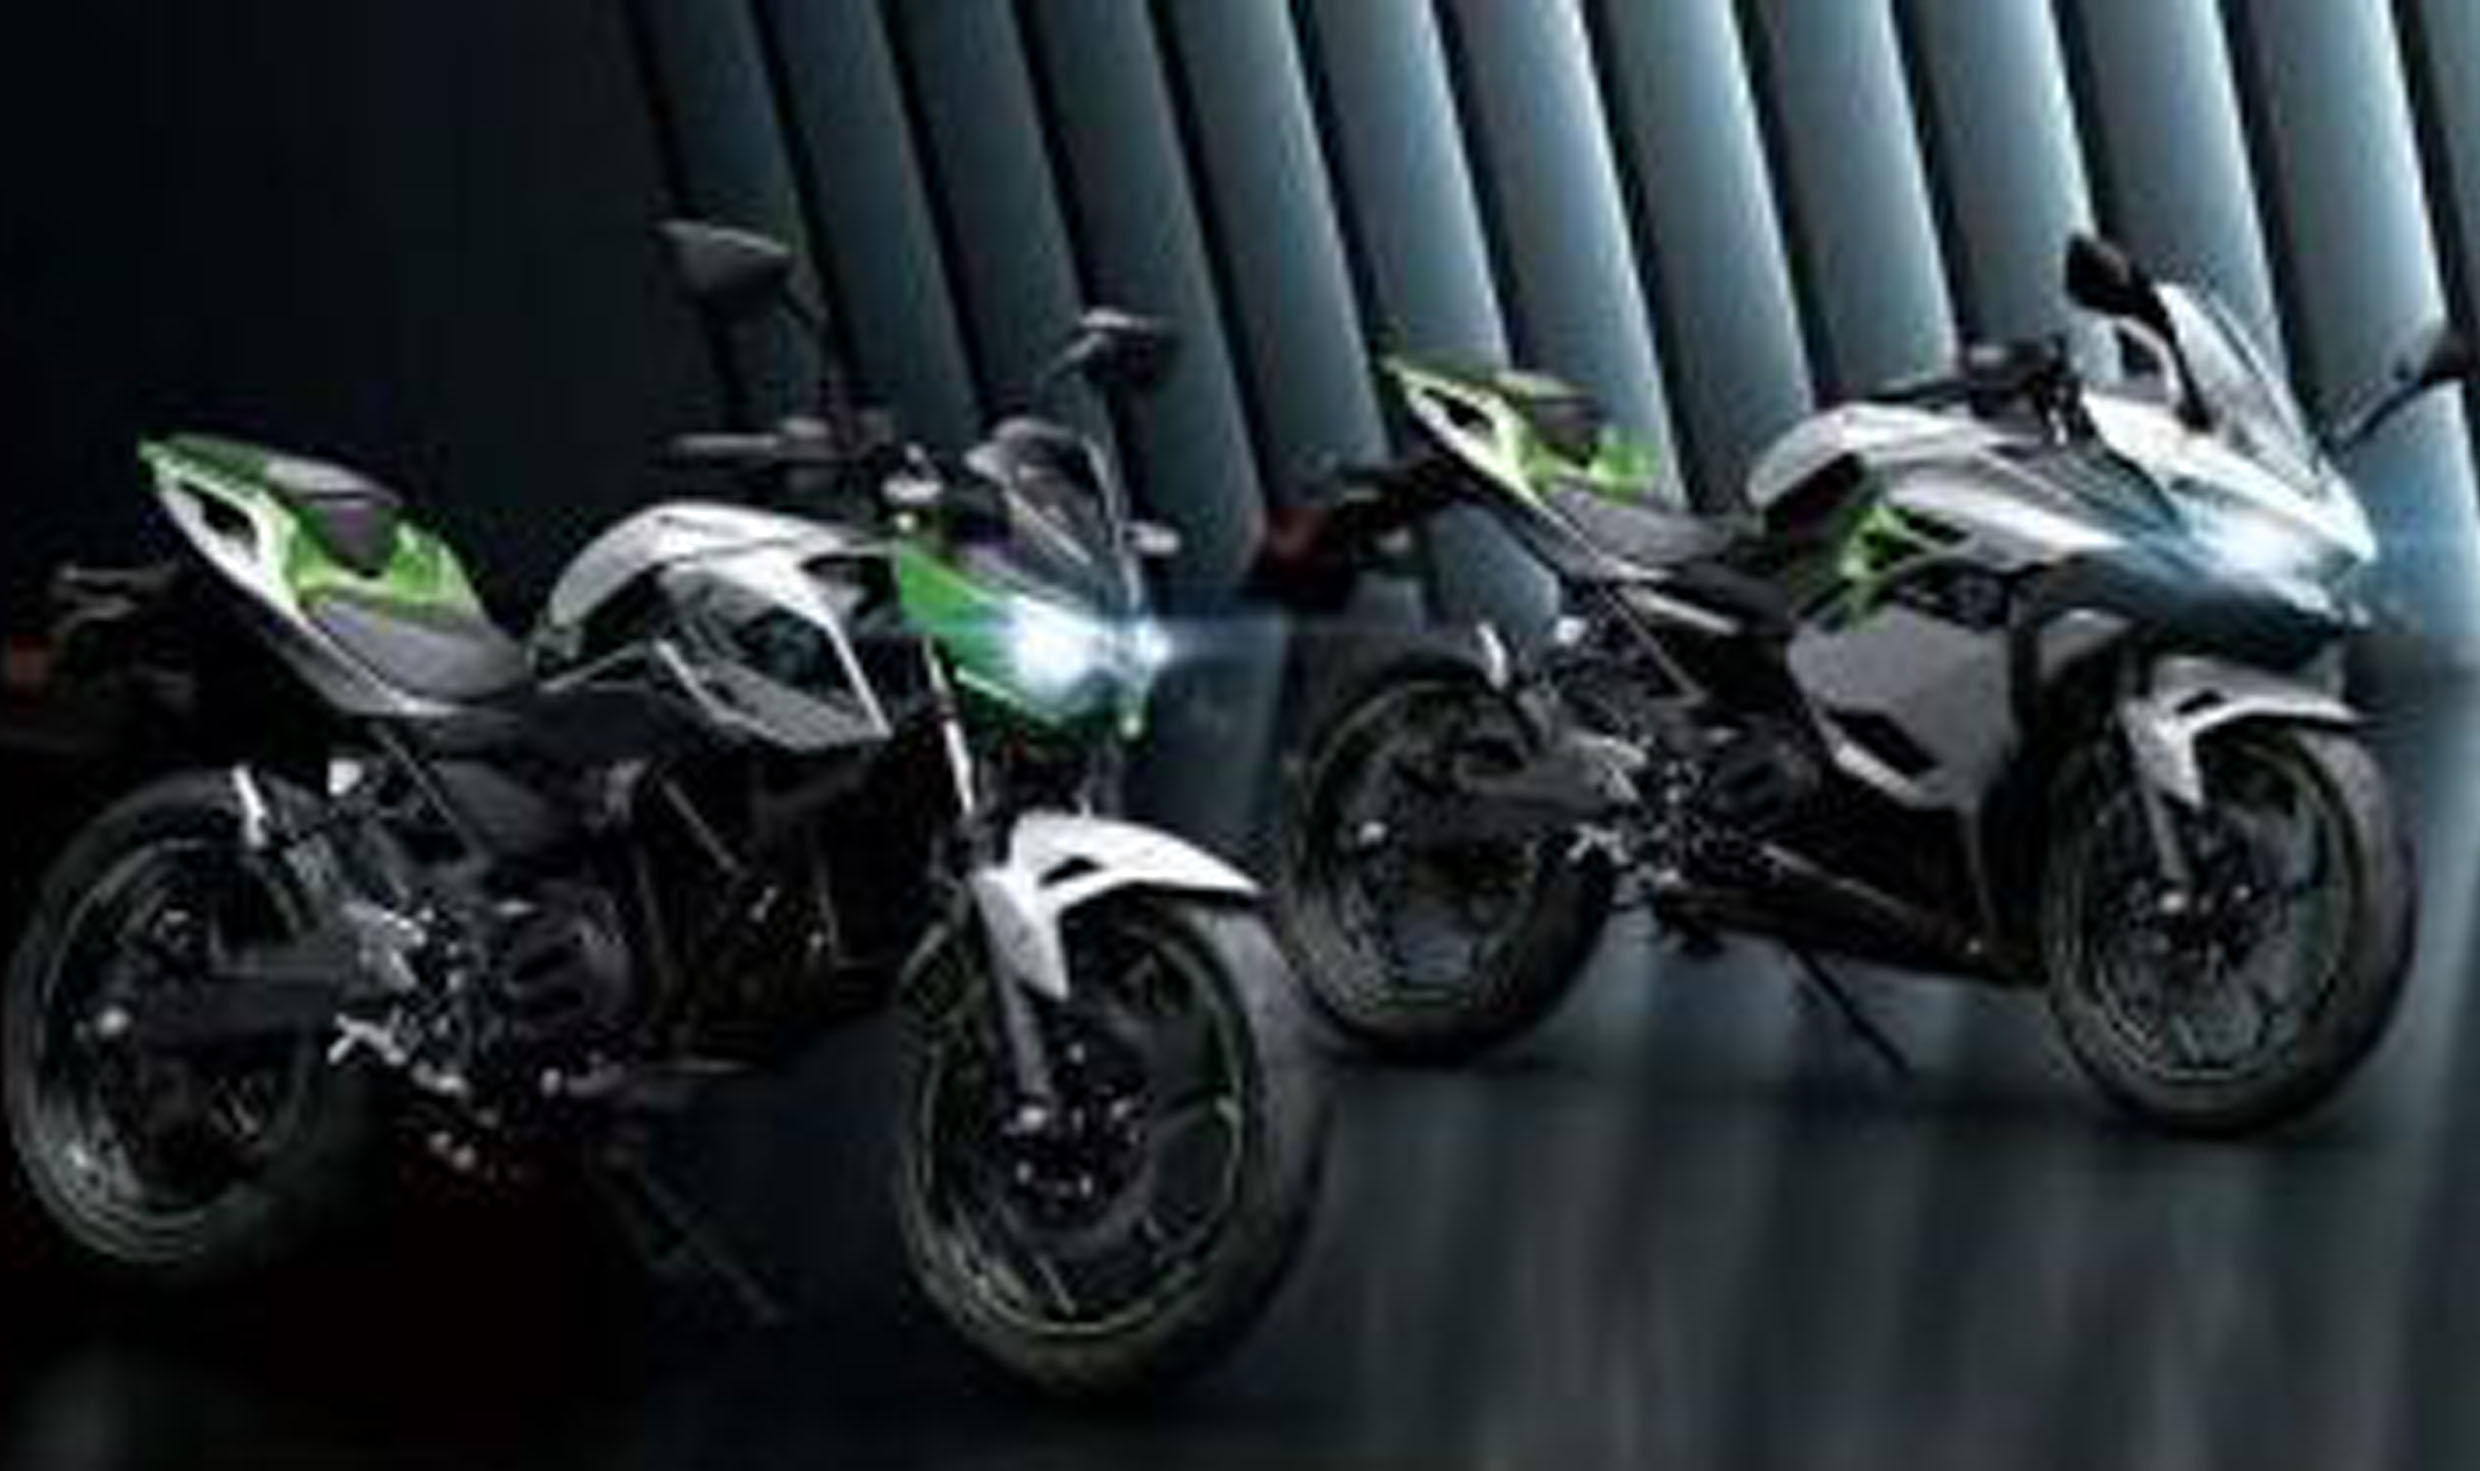 Siap Mengaspal! Kawasaki Resmi Umumkan 2 Sepeda Motor Listrik, Intip Spesifikasinya Disini